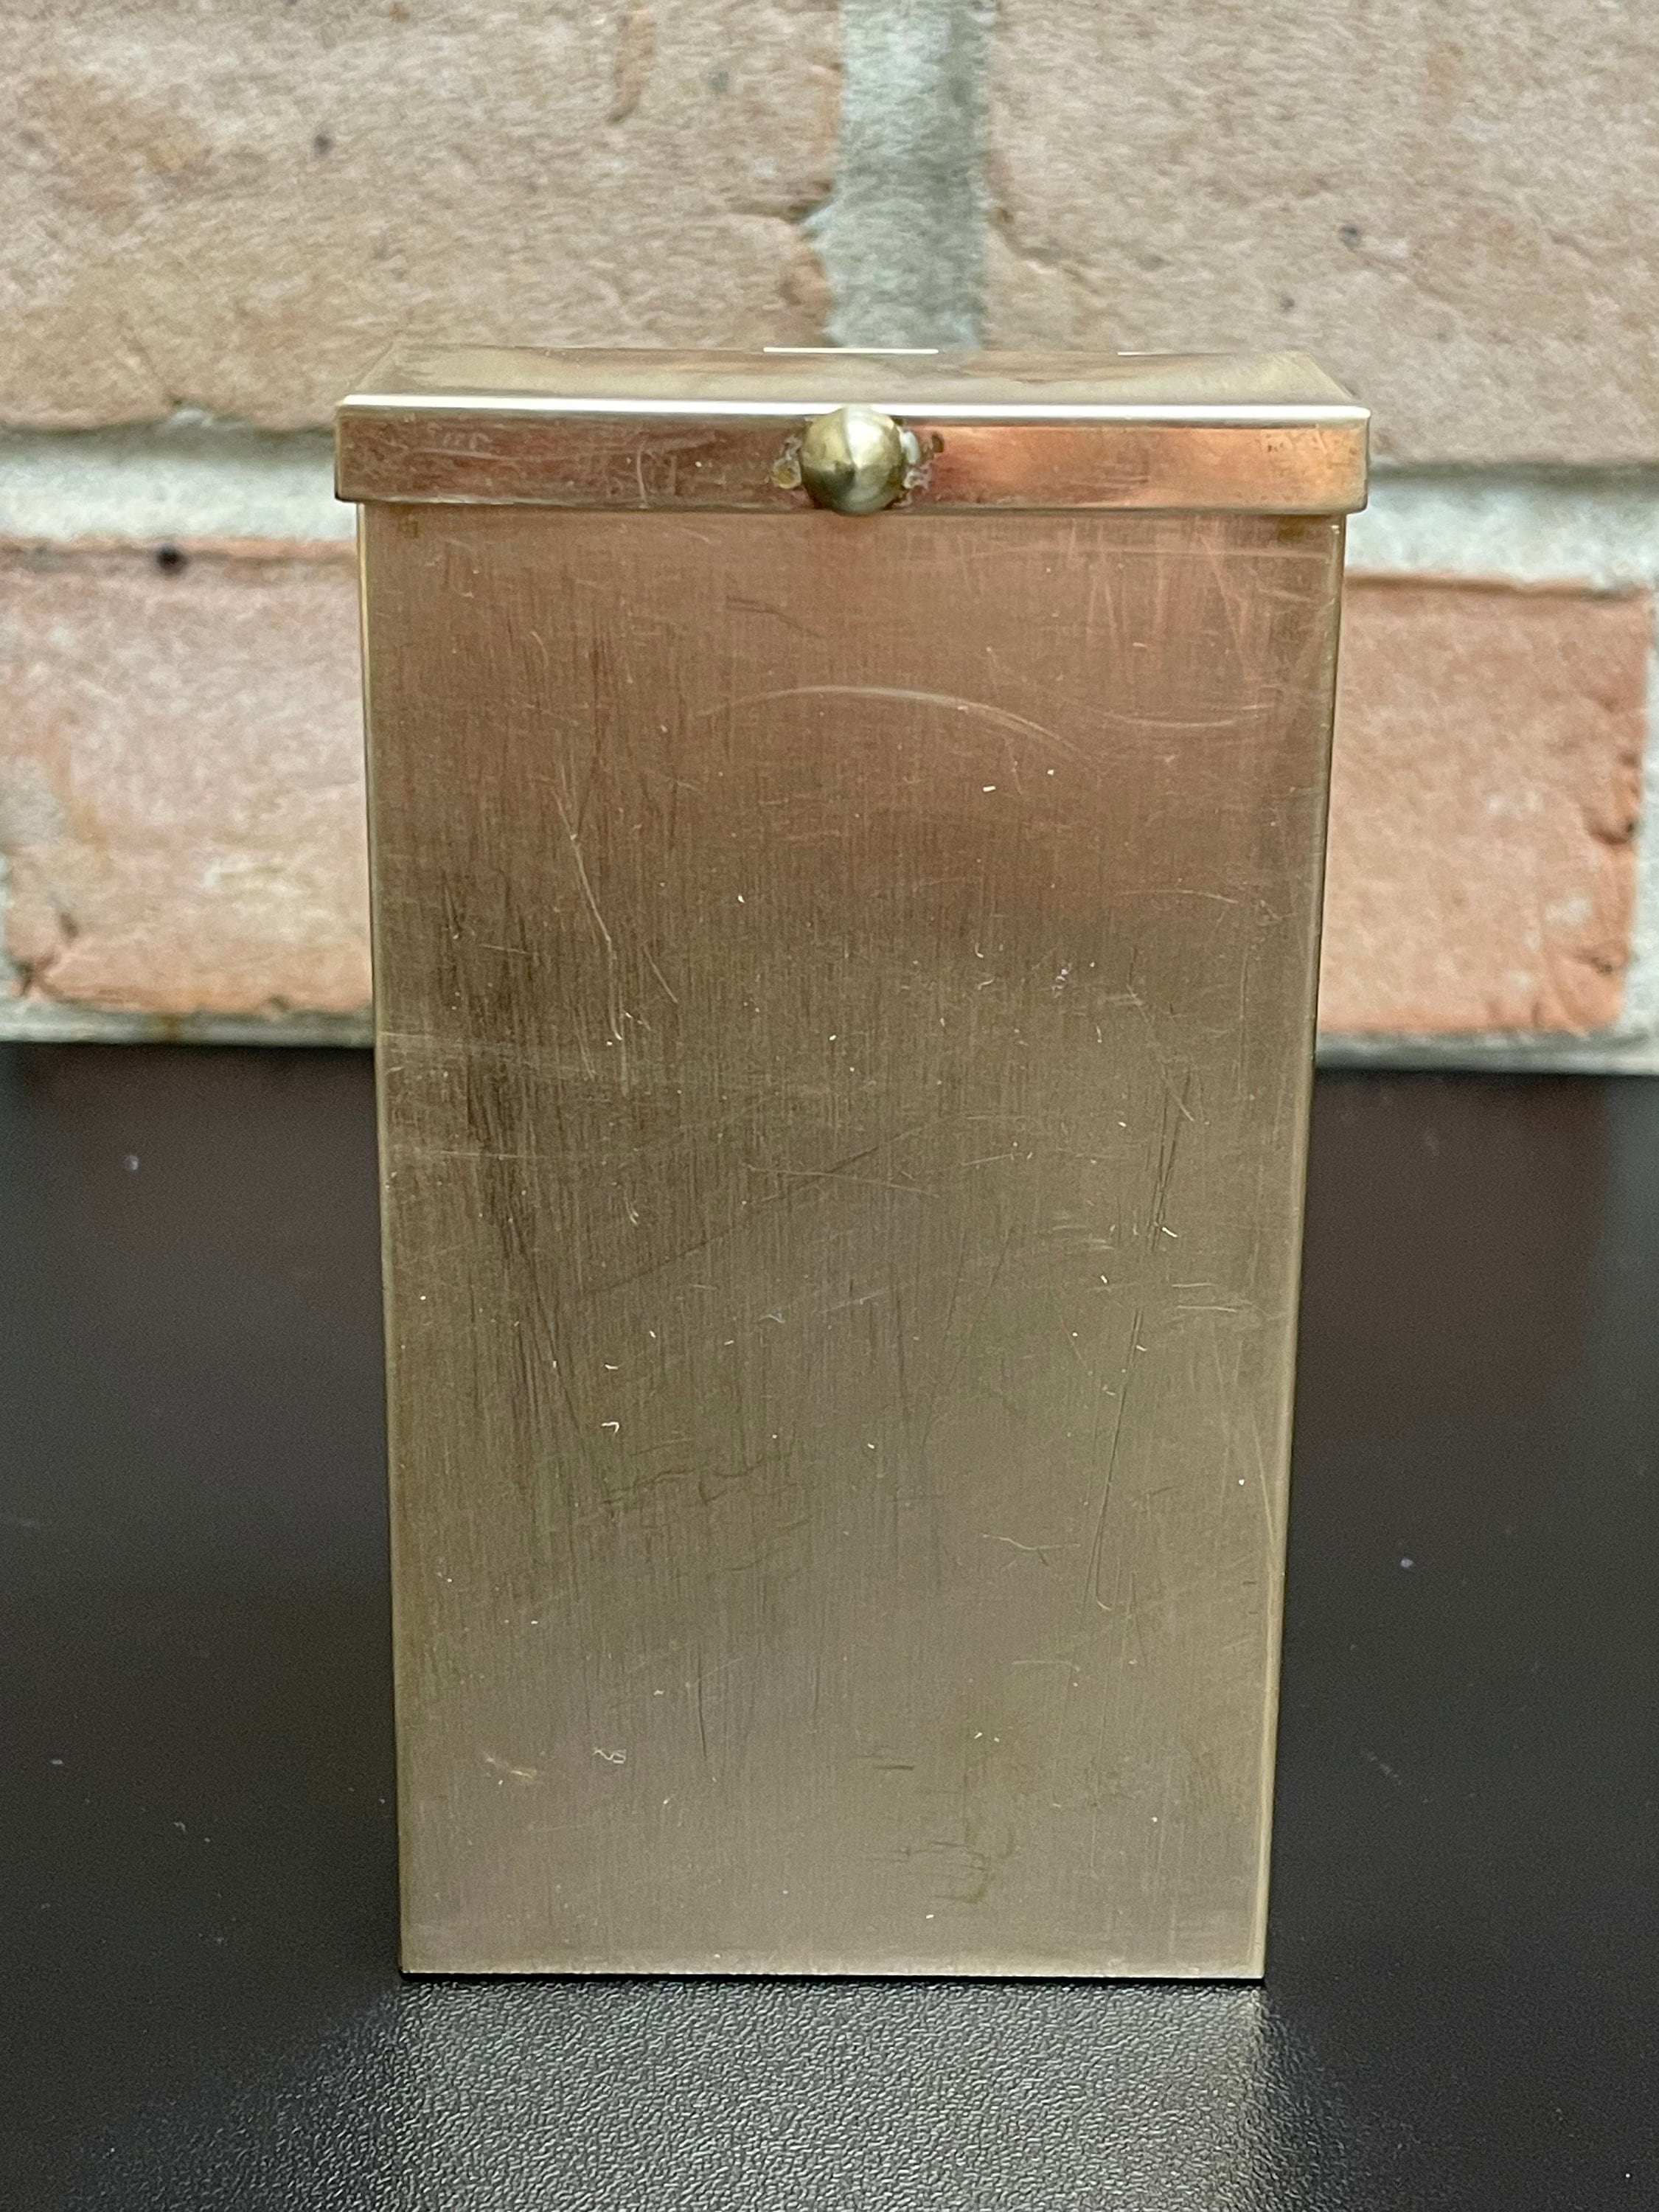 Antique Brass Paisley Cigarette Case (Regular Size Cigarettes